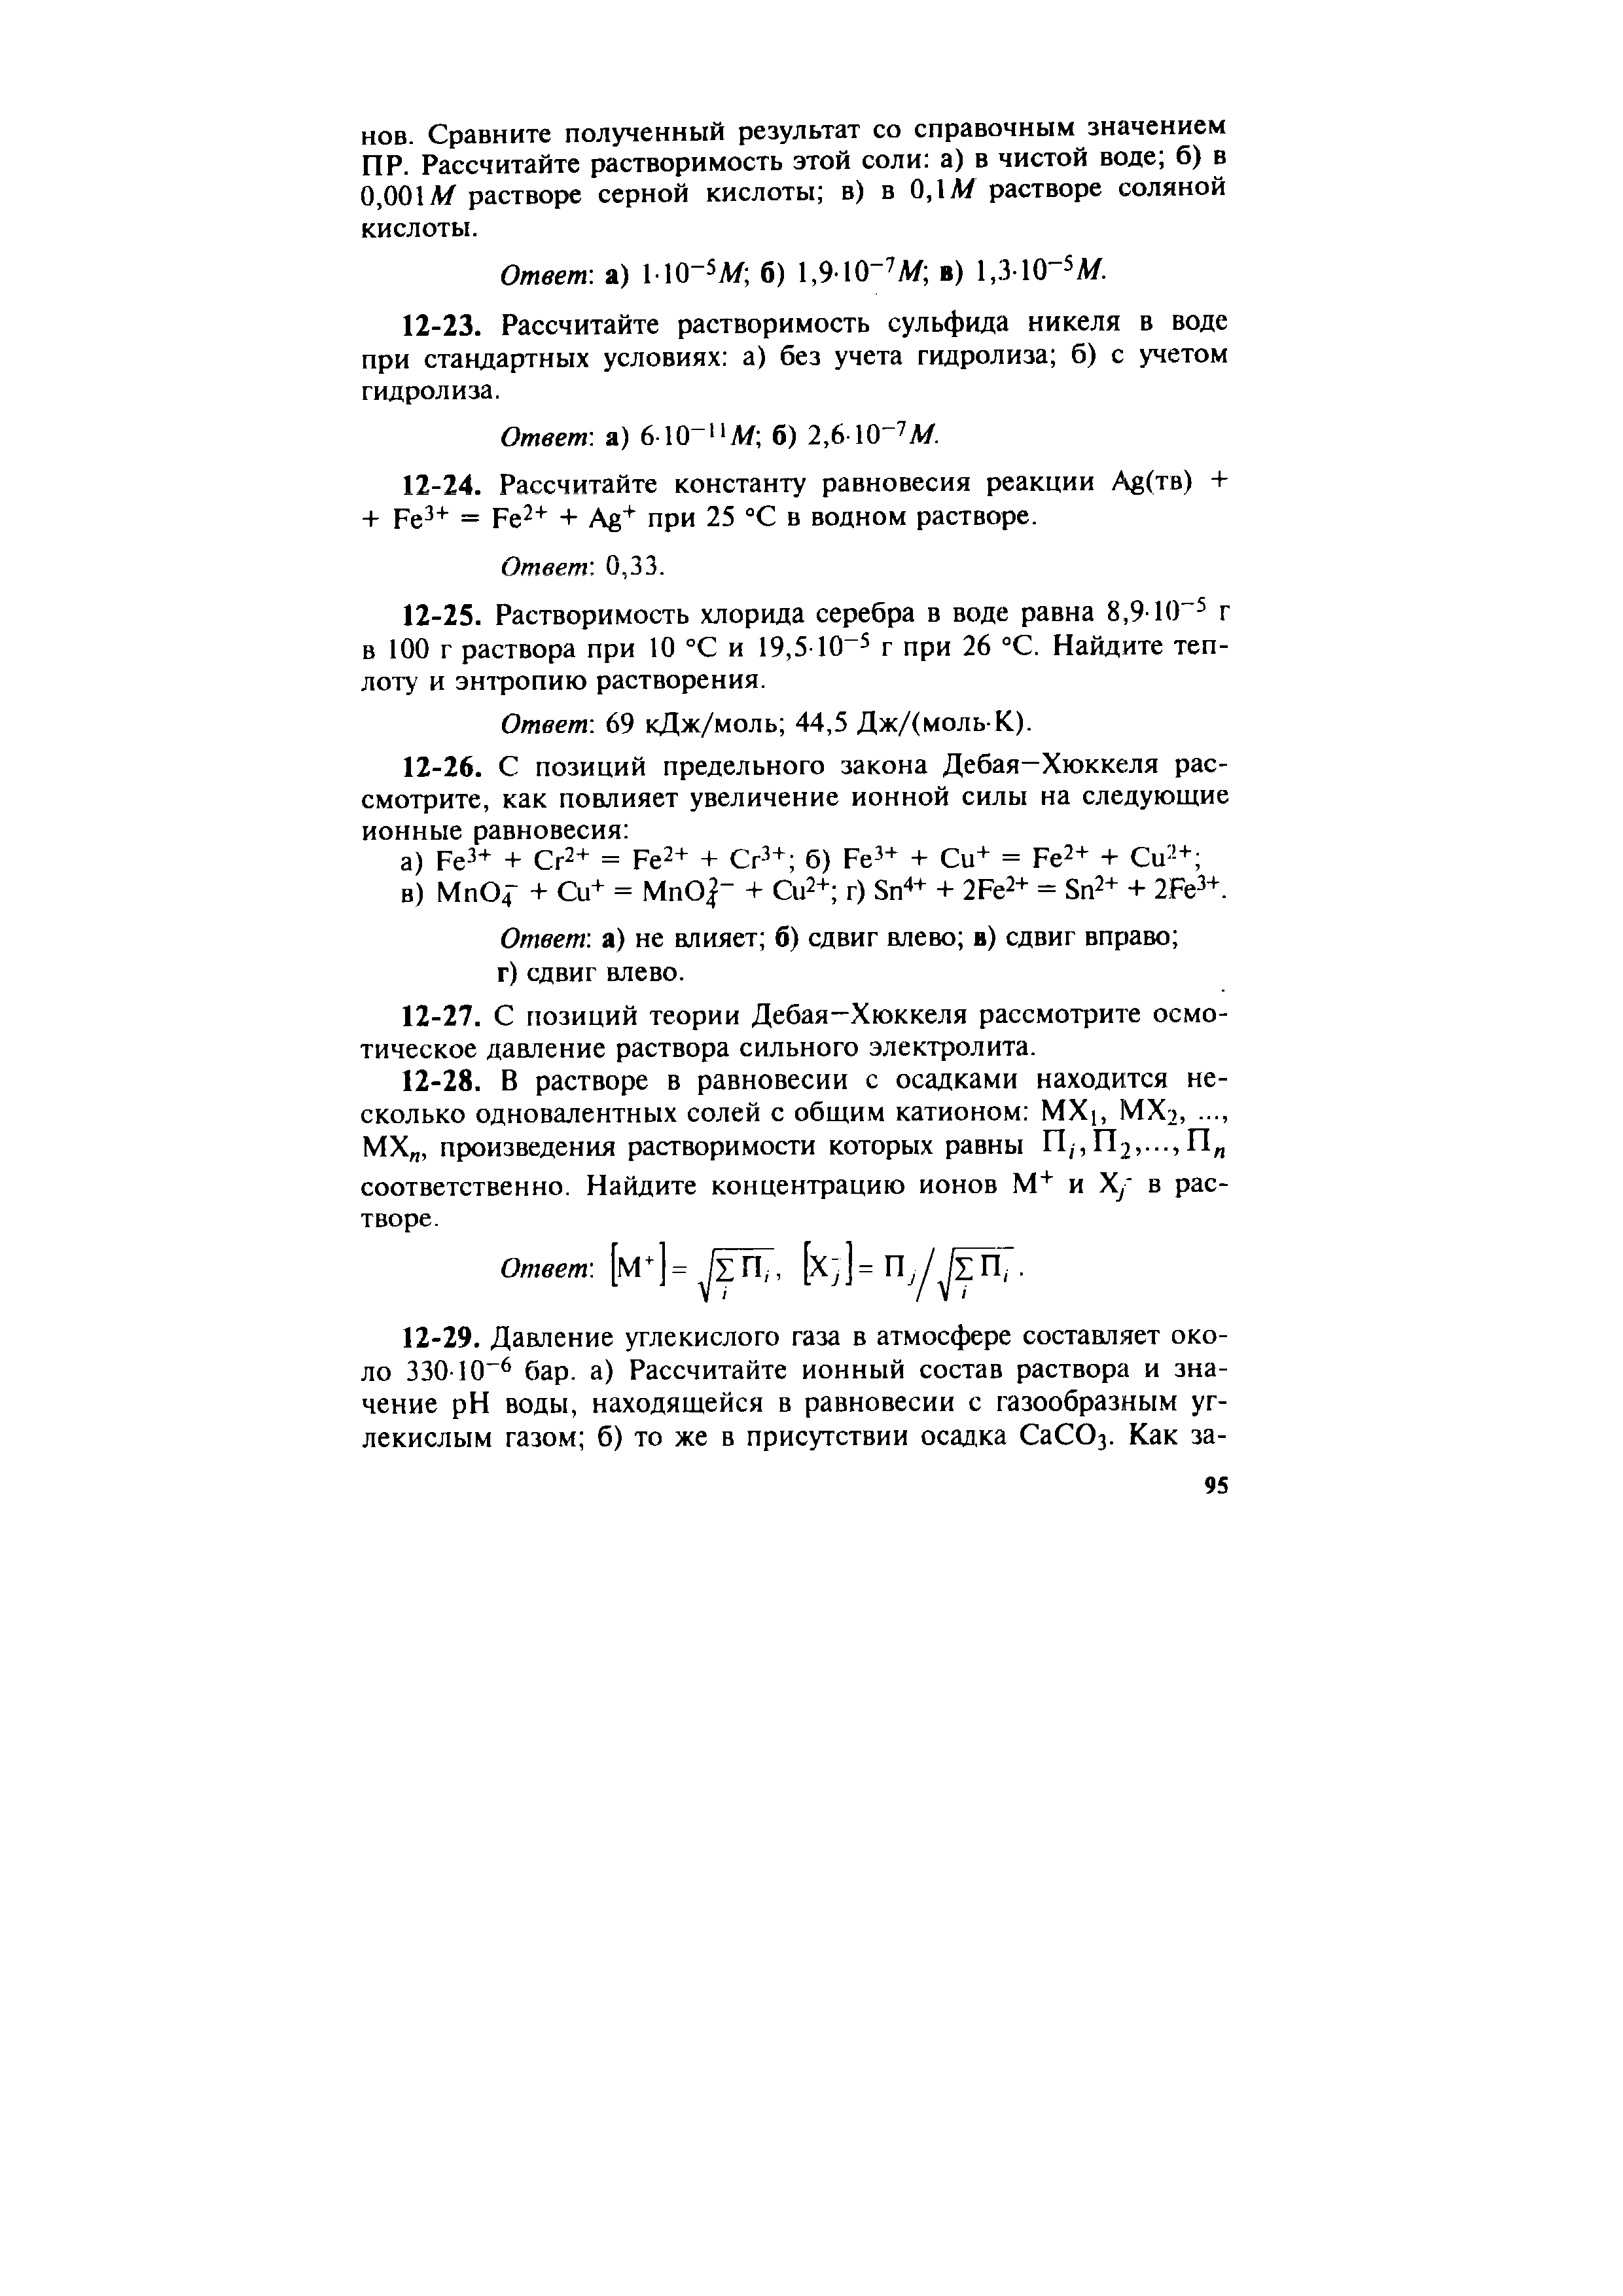 Ответ а) 110-5Л/ б) 1,910- М в) 1,310-5А/.